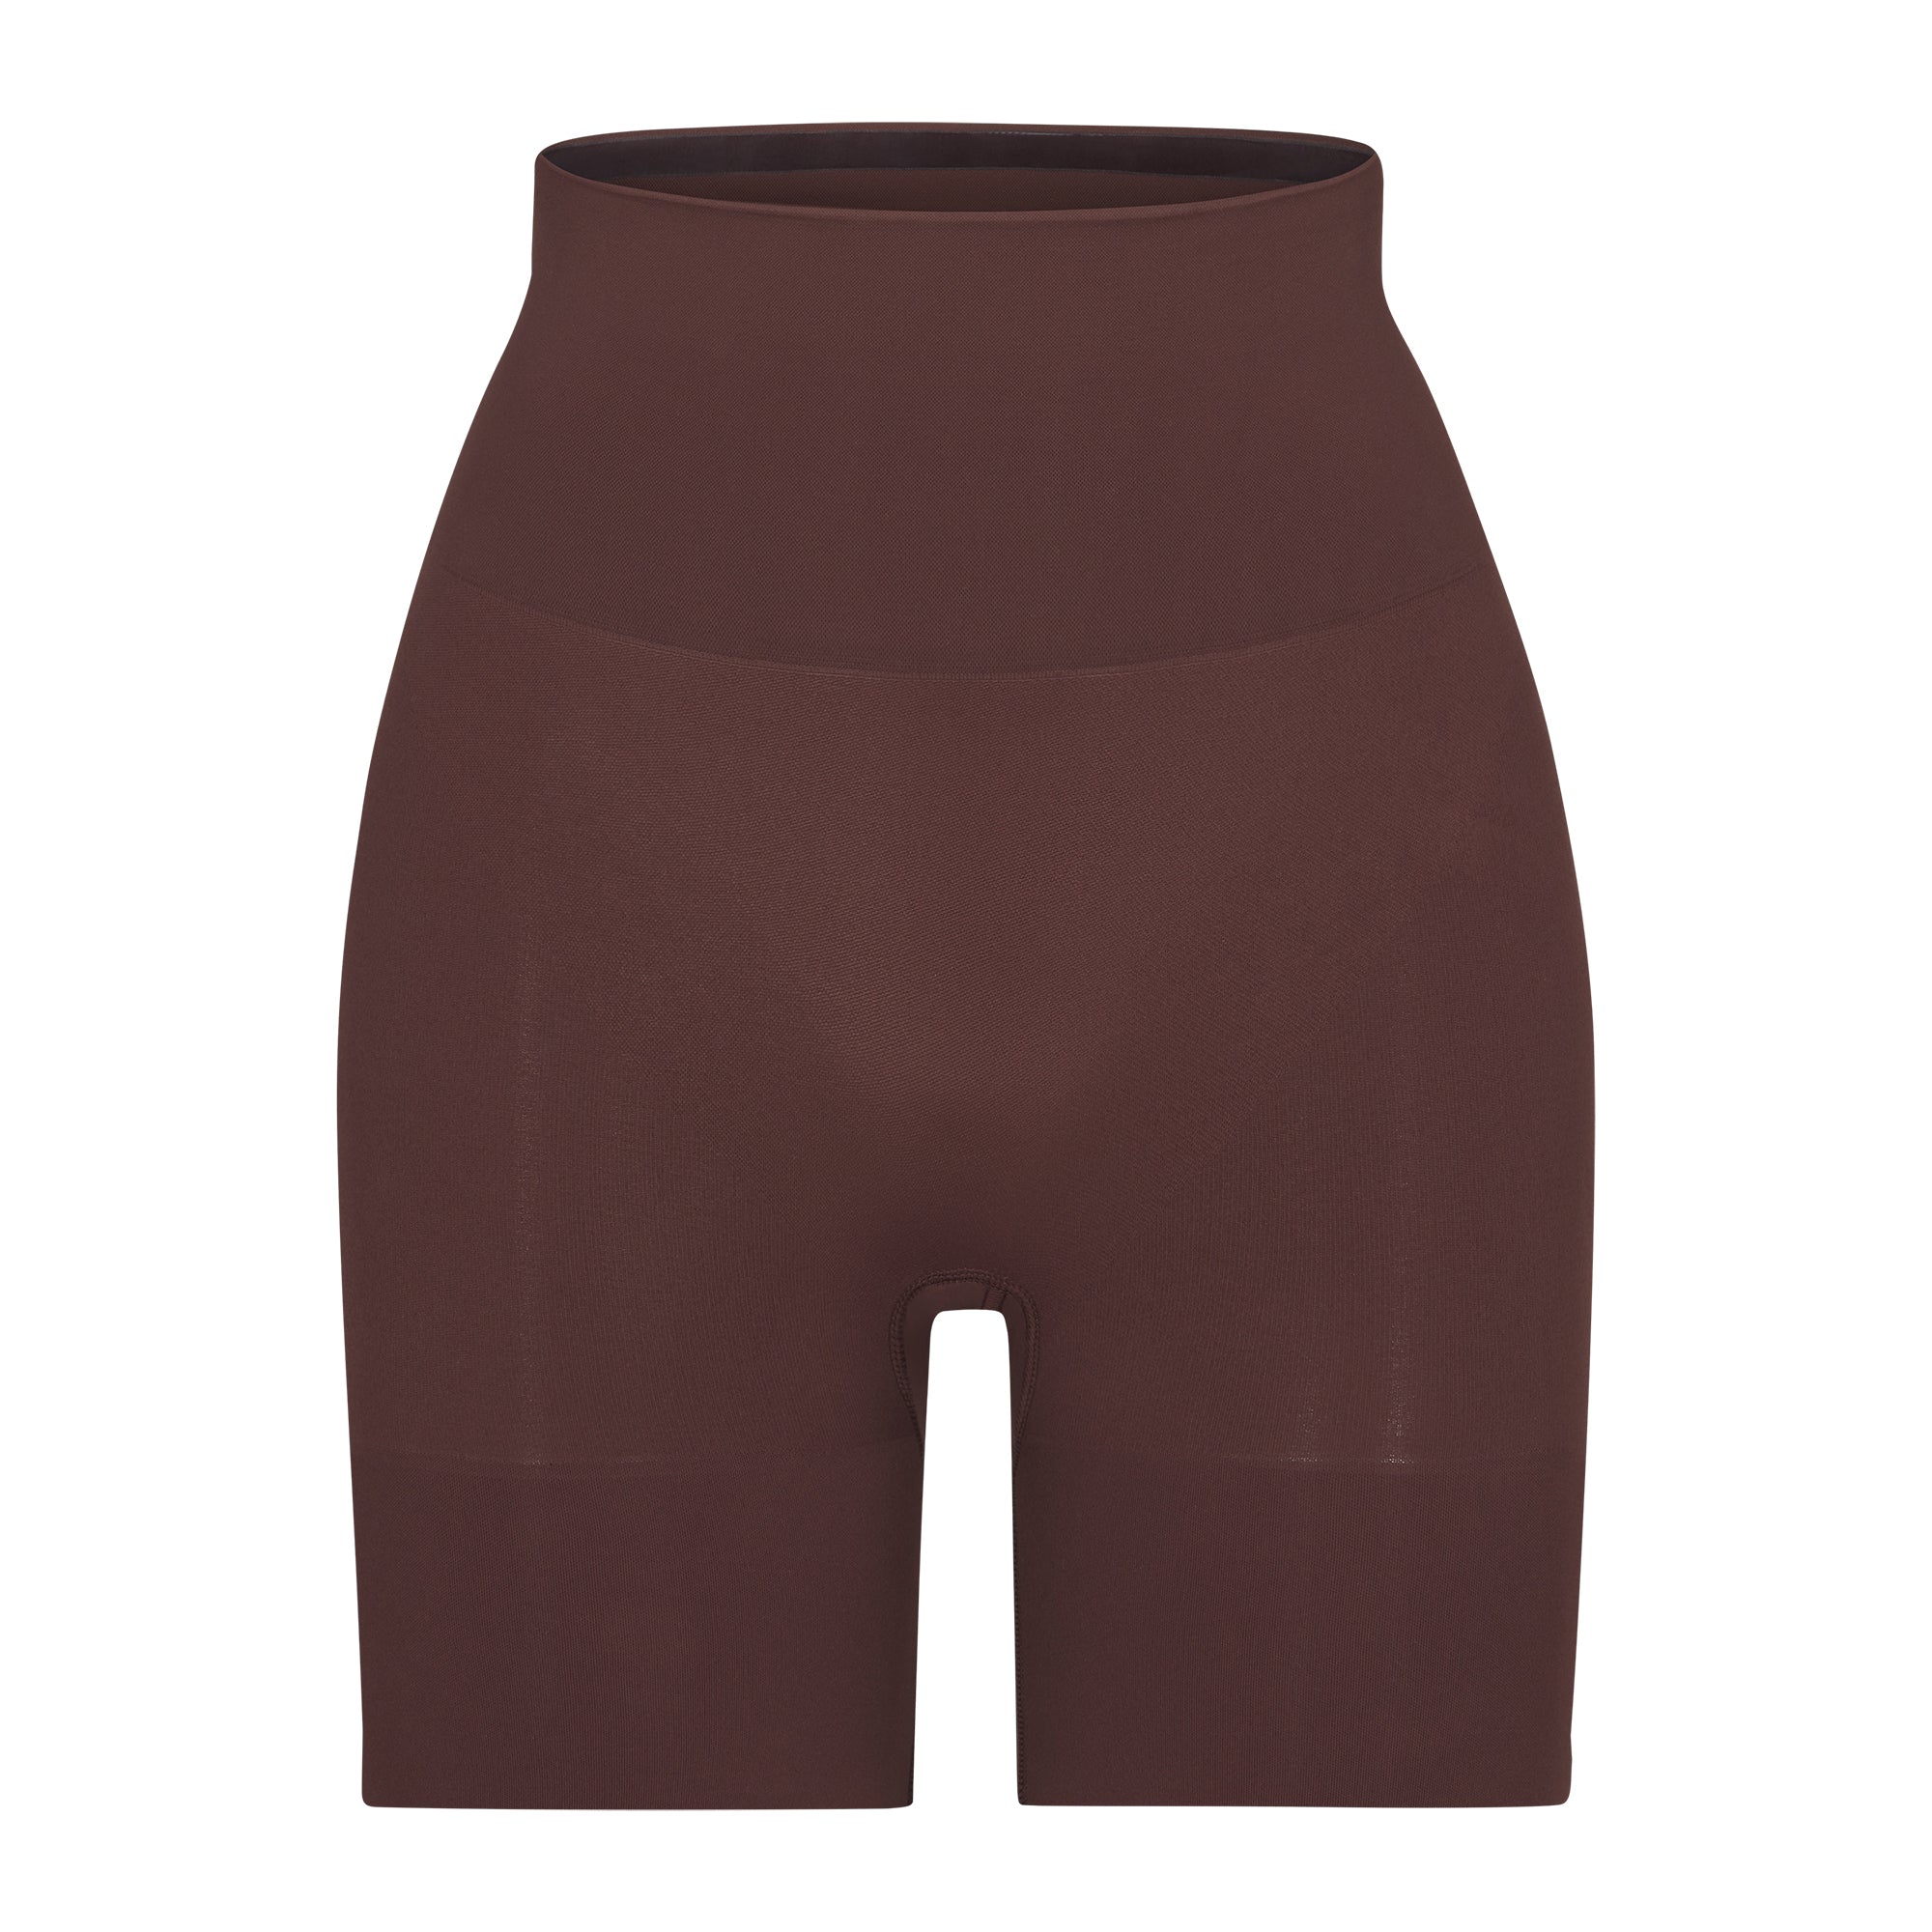 New Women's SKIMS Ochre Butt Enhancing Shaper Shorts Size XL